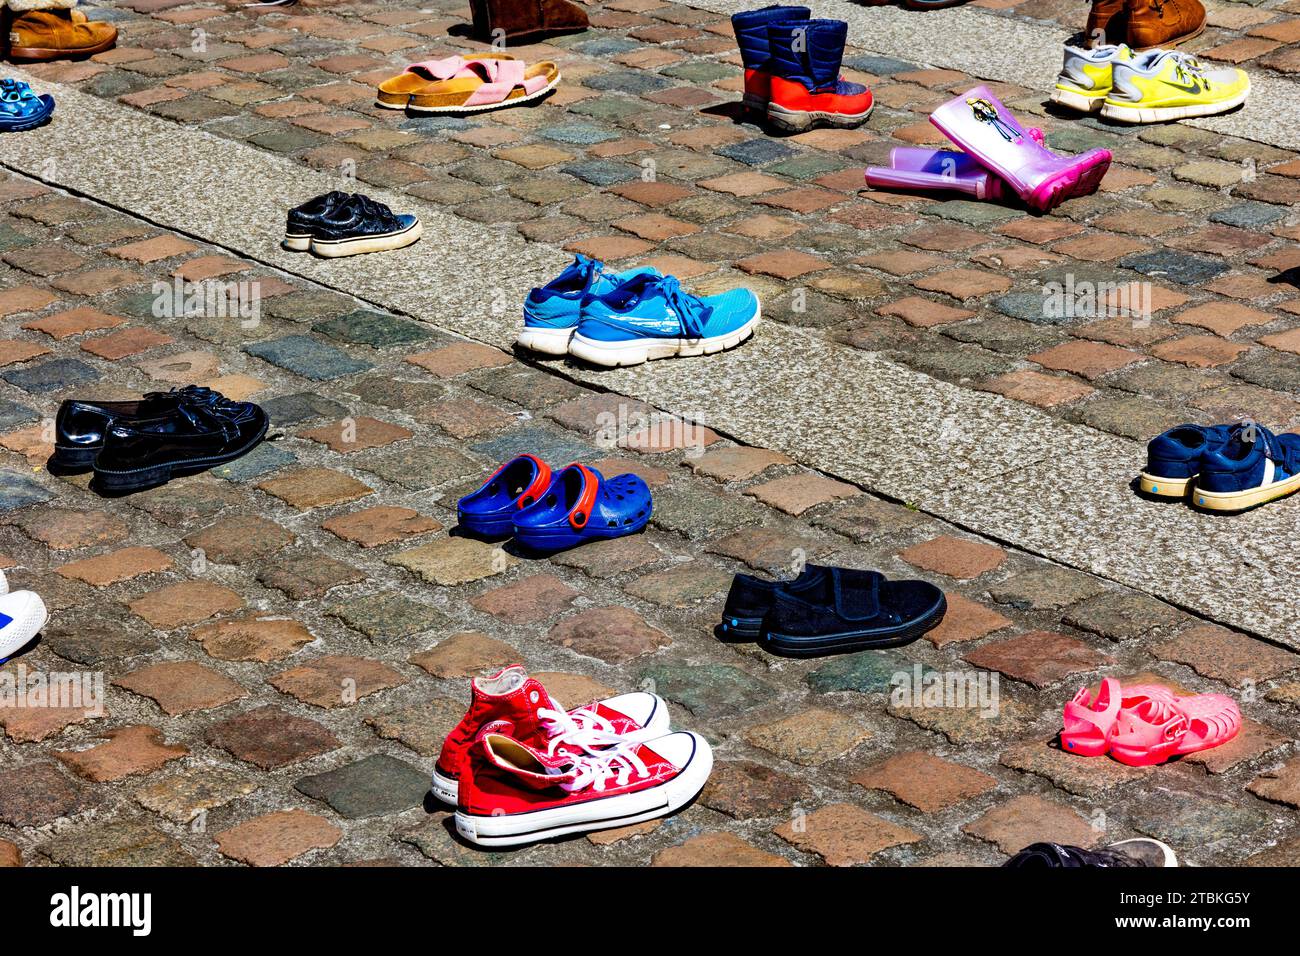 « Nous avons abandonné ces chaussures à l’extérieur de la cathédrale de Truro comme nos députés ont abandonné les enfants réfugiés » - les chaussures représentent la séparation des familles réfugiées. Banque D'Images